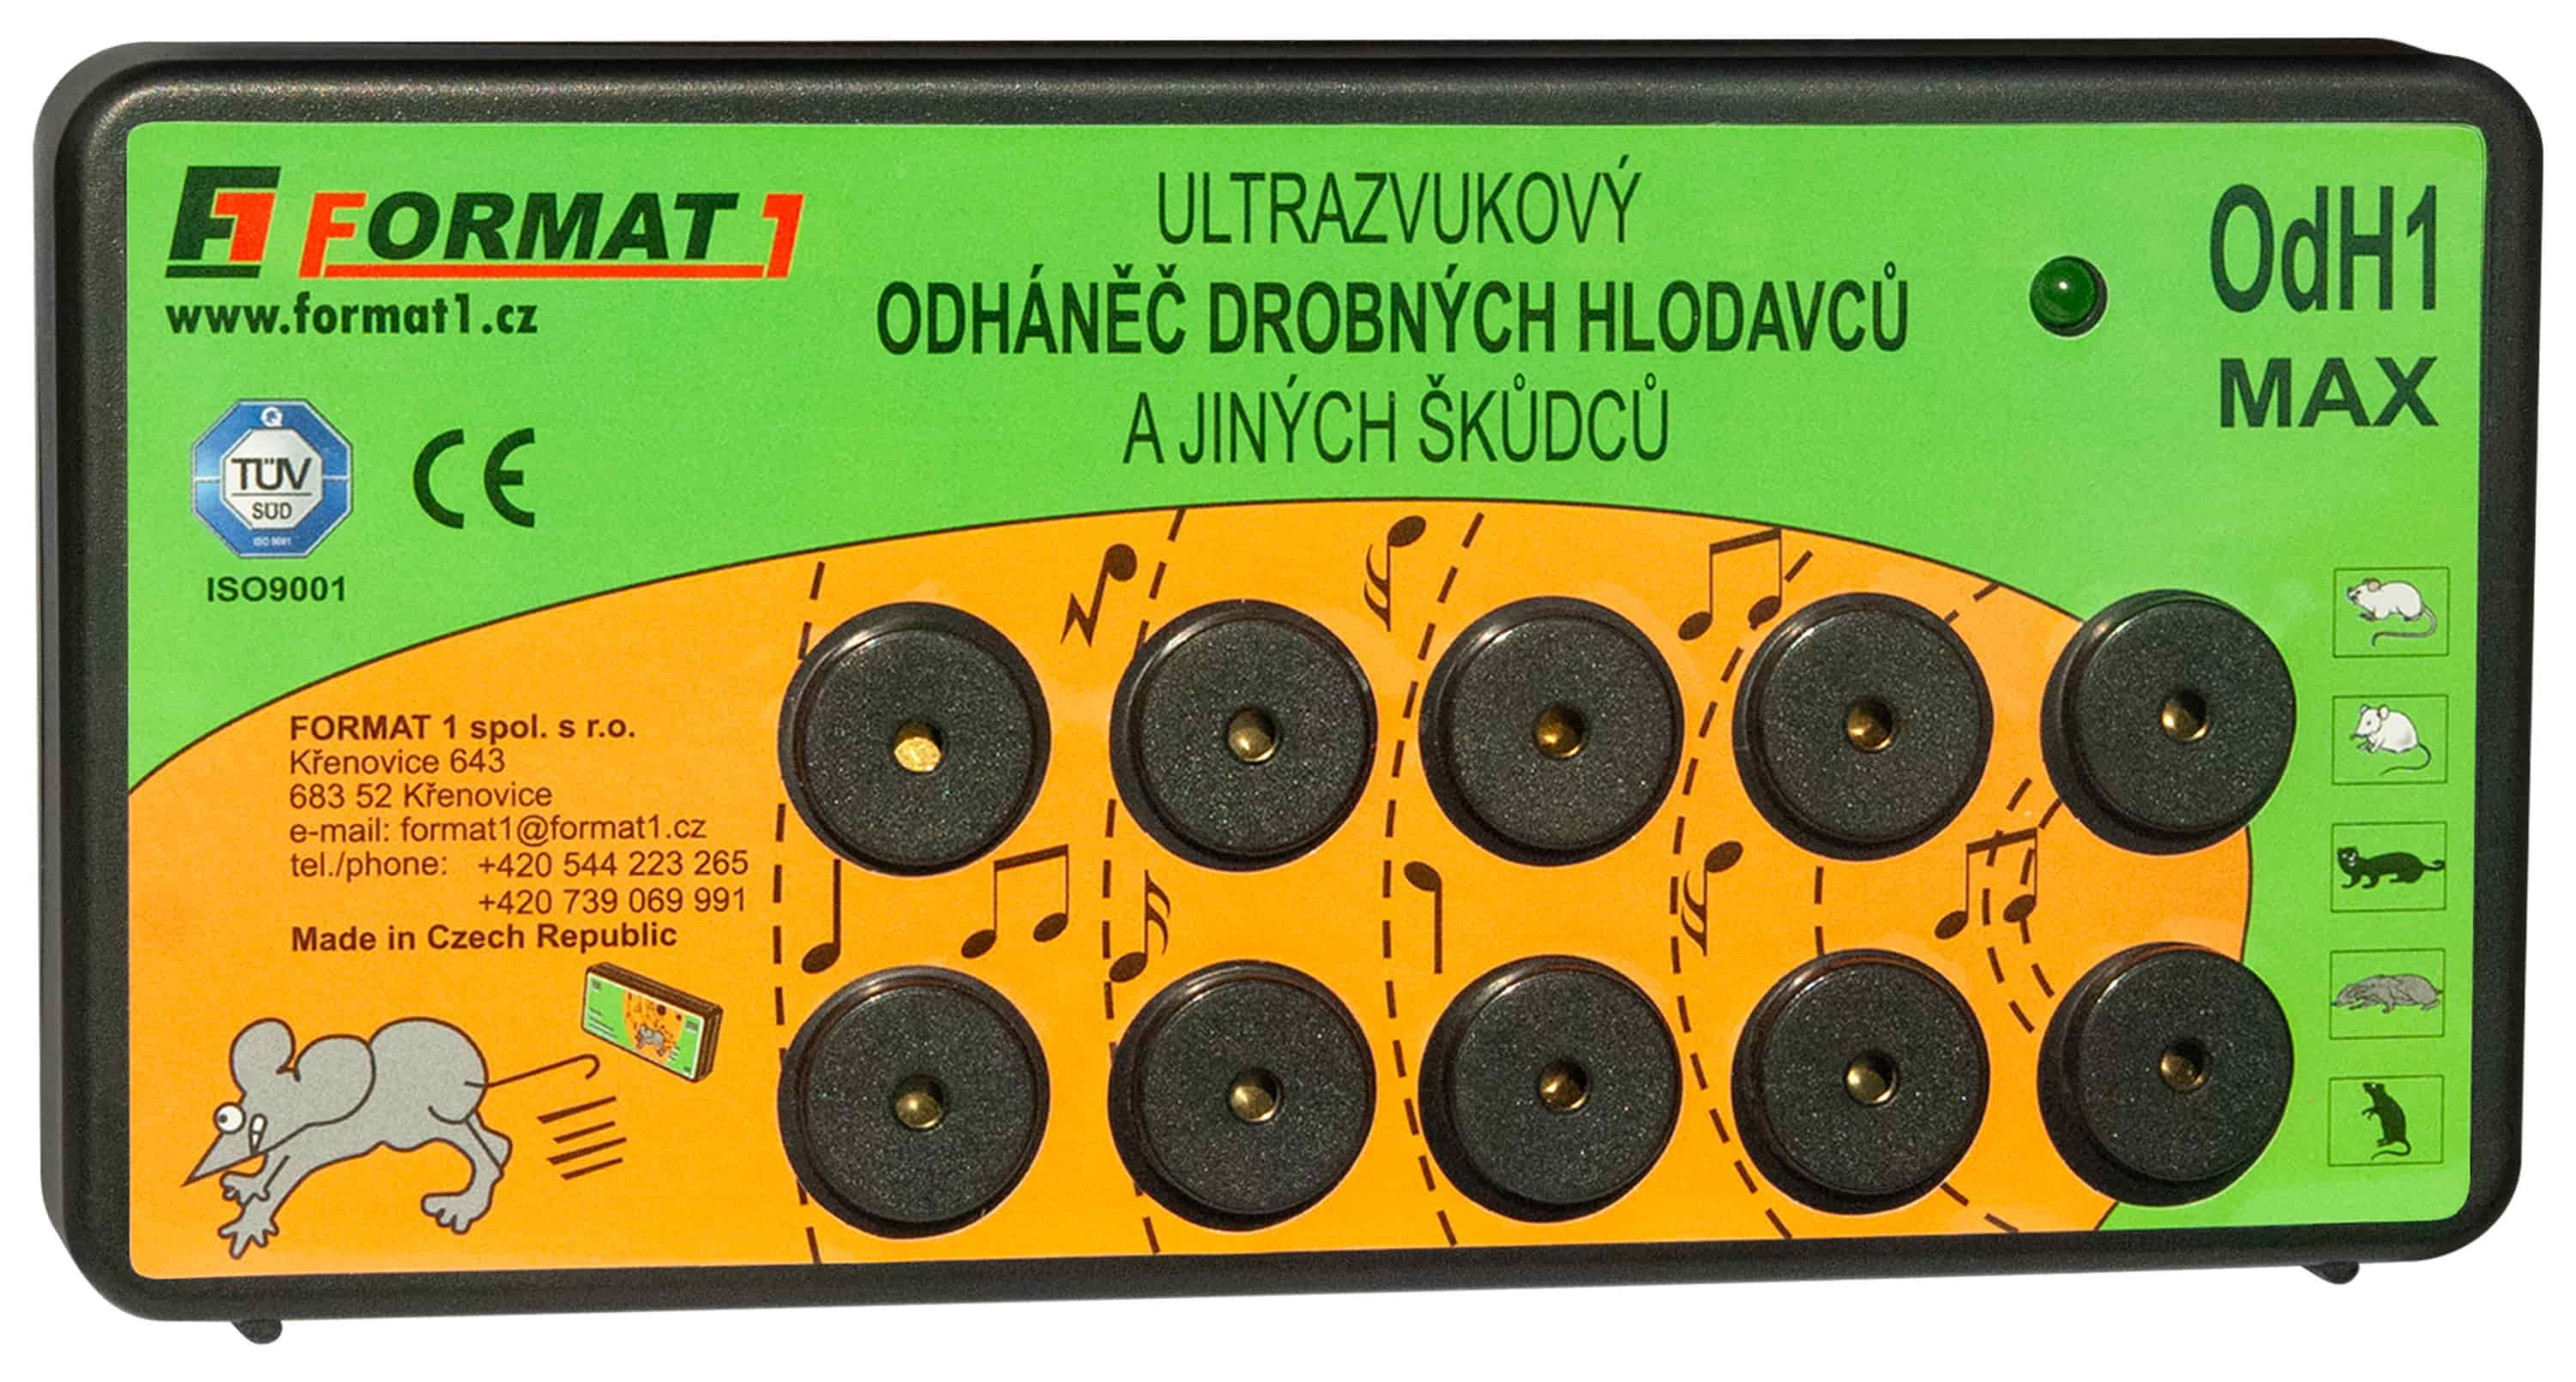 Ultrazvukový odháněč drobných hlodavců OdH1-MAX - slyšitelný  vč. adaptéru